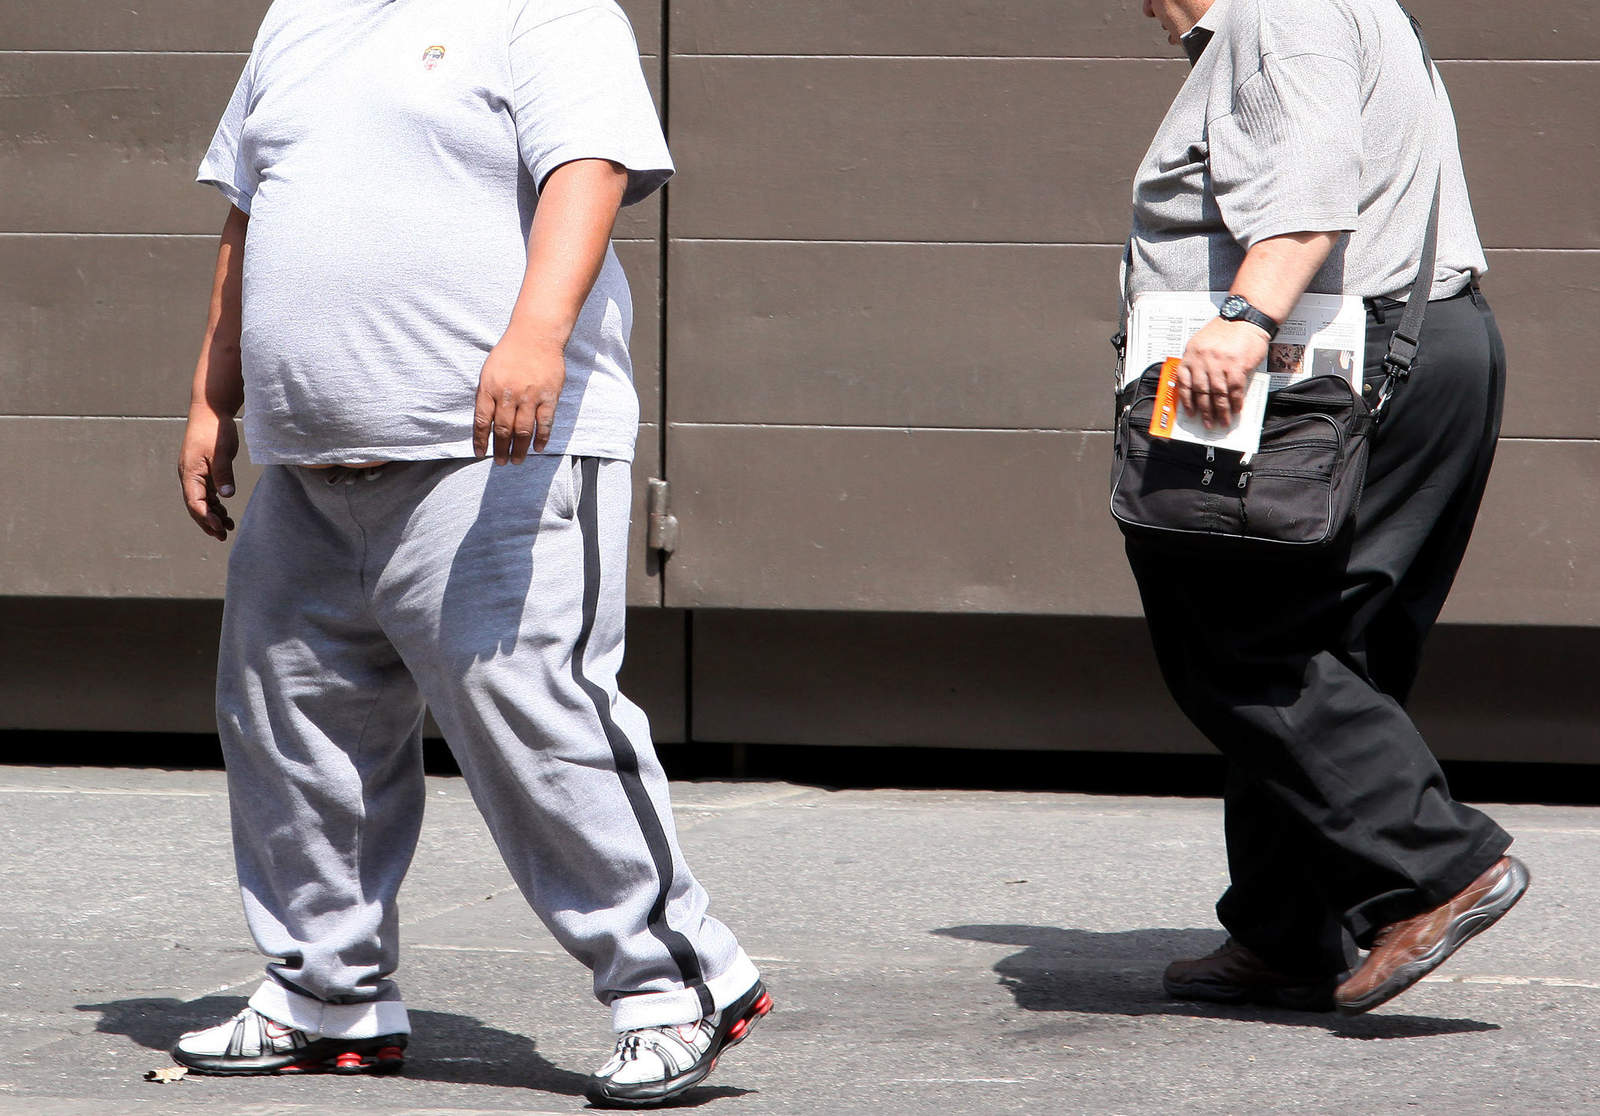 Nuevo gobierno frente a la crisis de salud: obesidad y diabetes